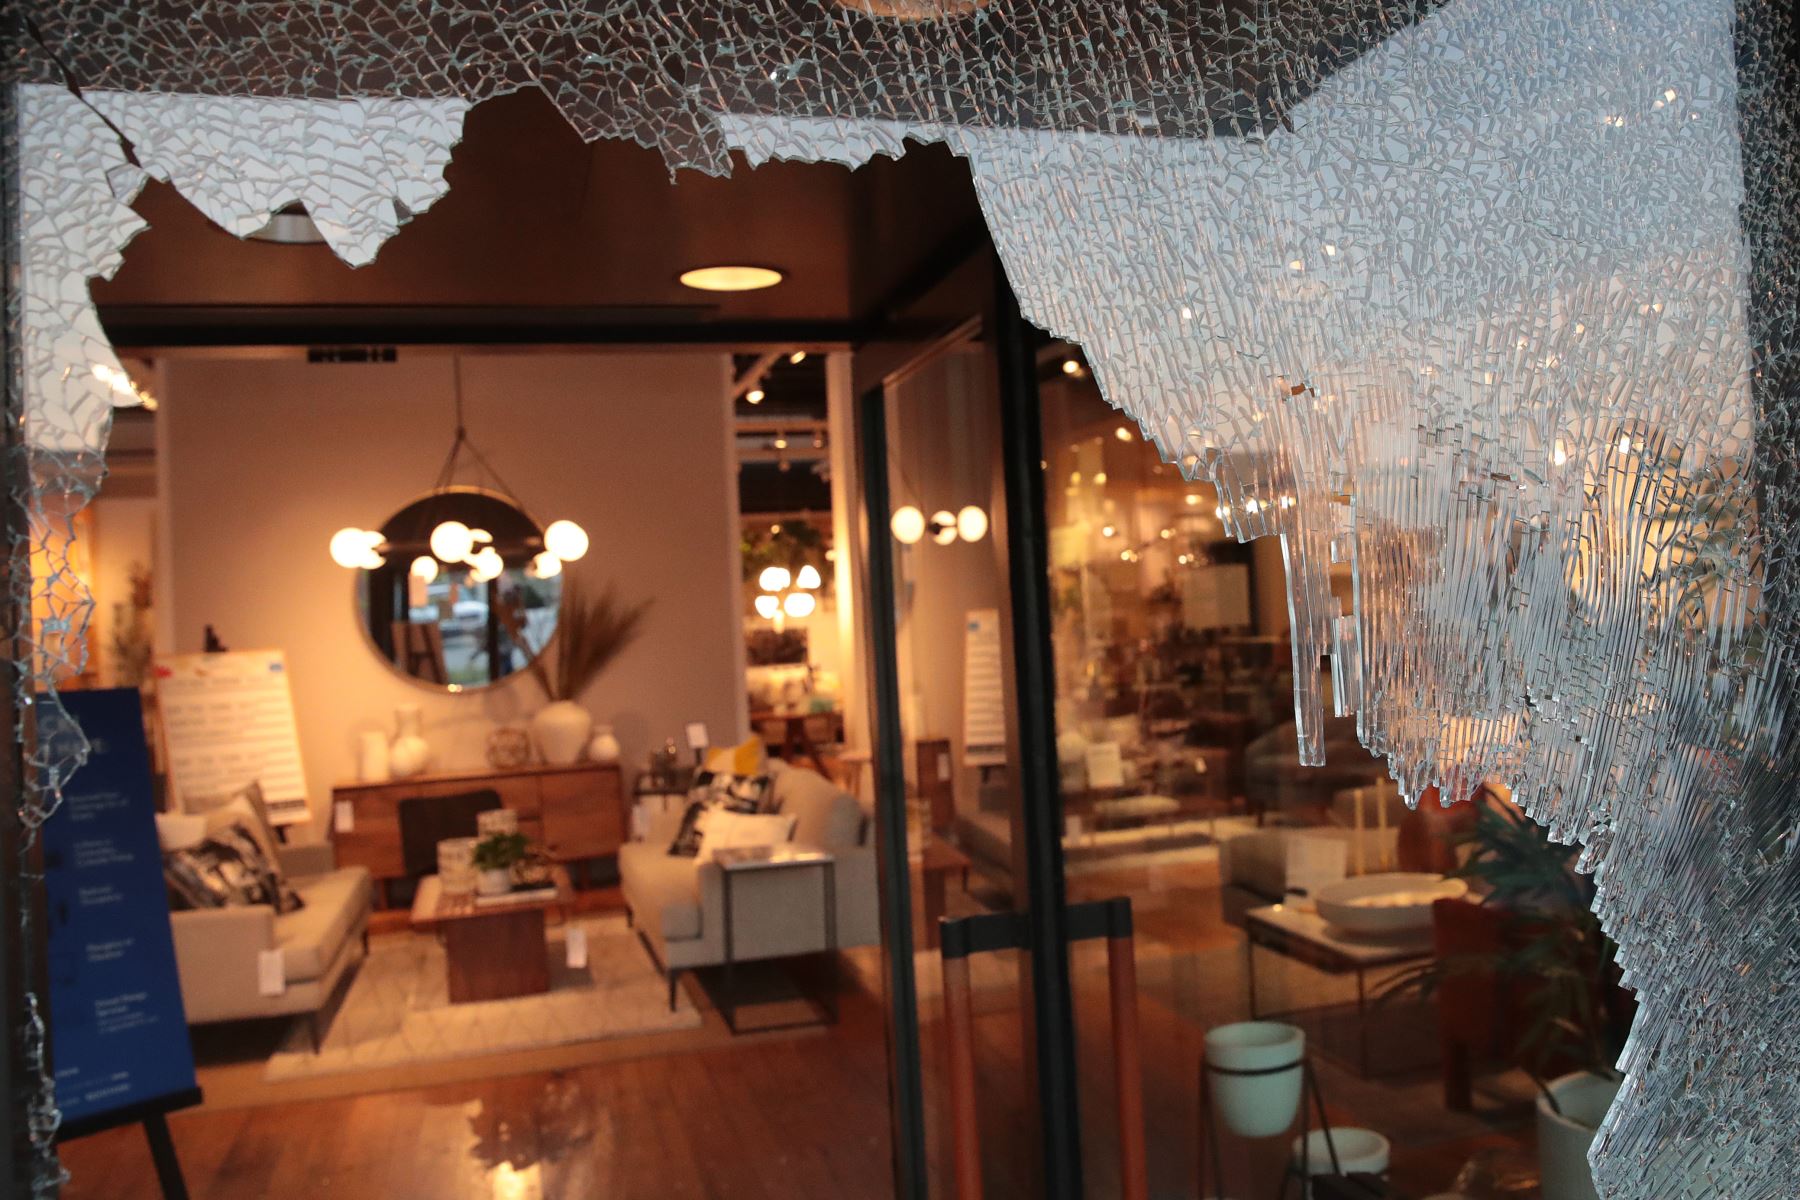 Tiendas de hogar también sufrieron daños anoche durante los saqueos, Chicago. Foto: AFP